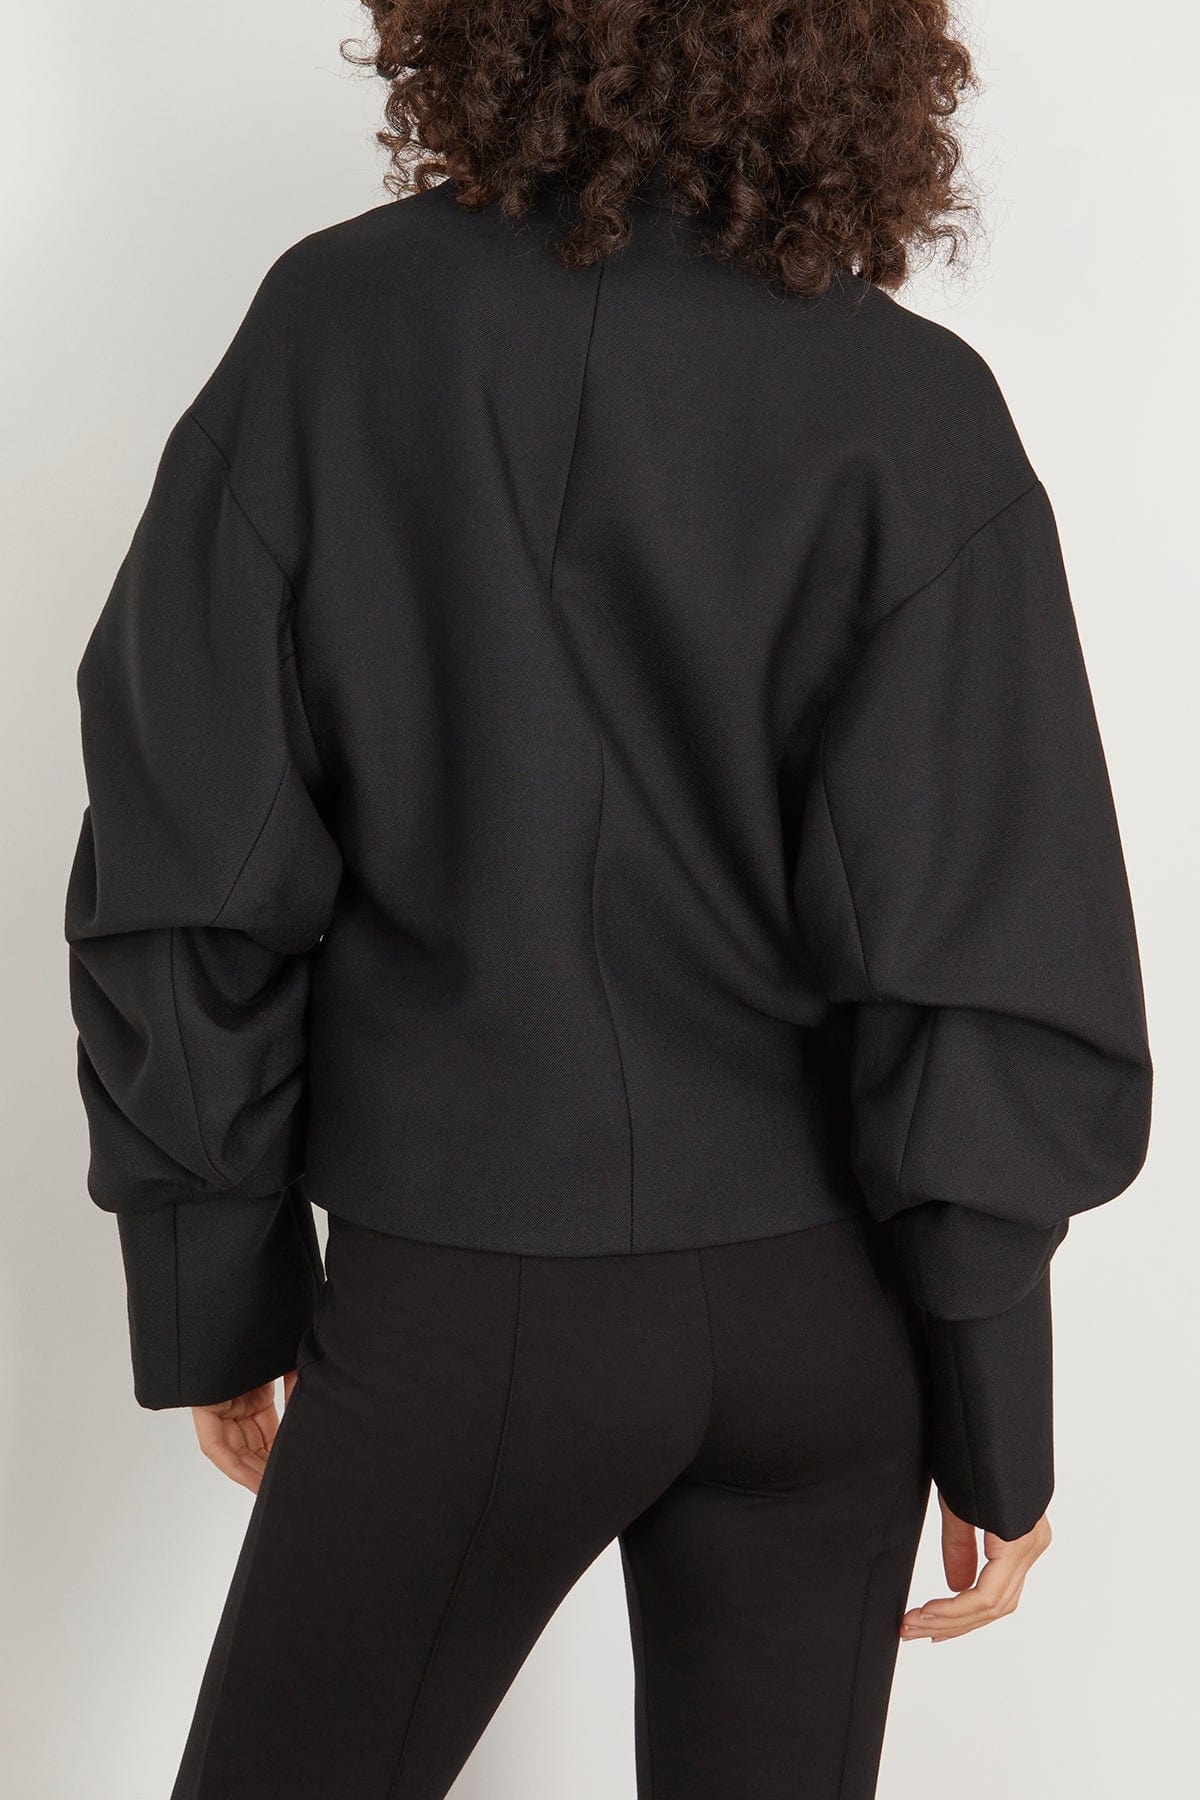 Wrinkled Sleeve Jacket in Black - 4